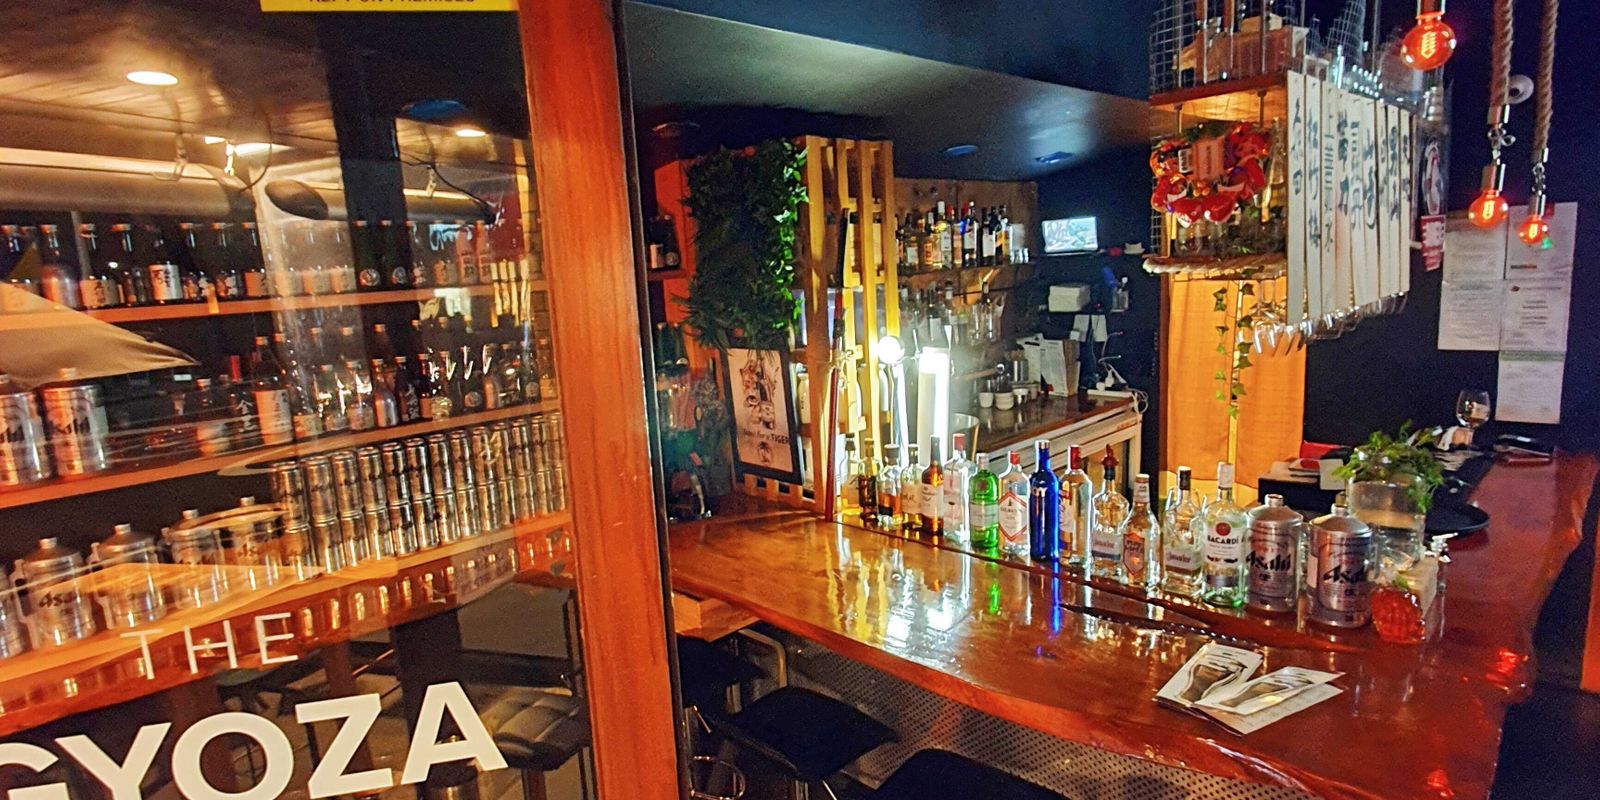 The Gyoza Bar